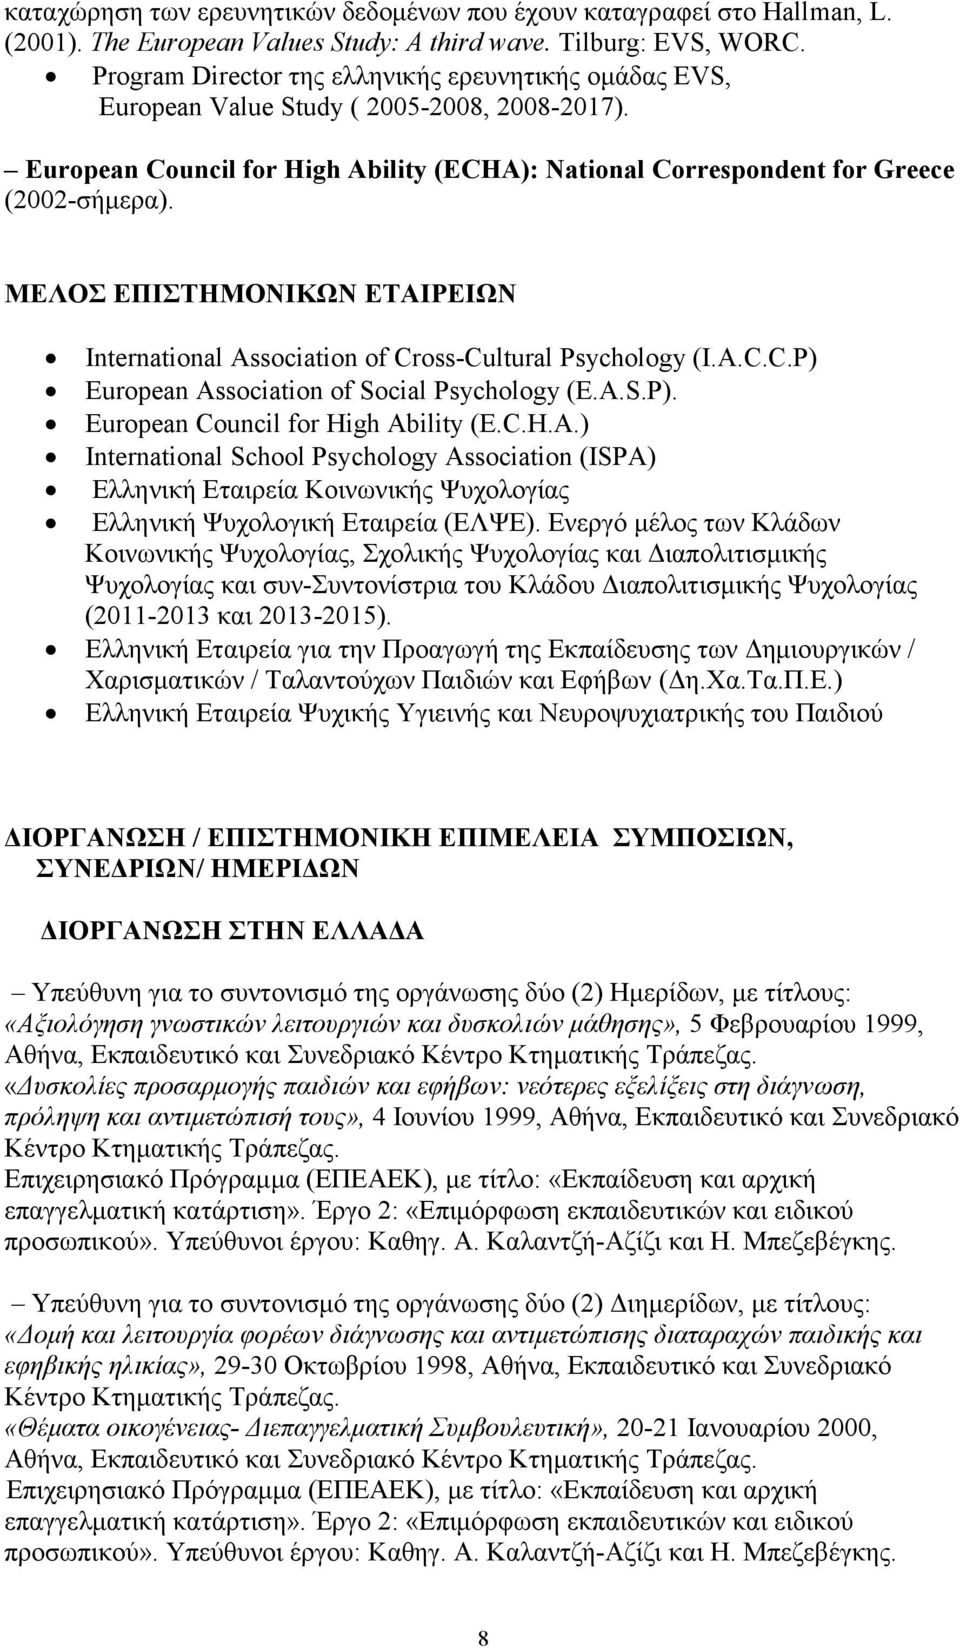 ΜΕΛΟΣ ΕΠΙΣΤΗΜΟΝΙΚΩΝ ΕΤΑΙΡΕΙΩΝ International Association of Cross-Cultural Psychology (I.A.C.C.P) European Association of Social Psychology (E.A.S.P). Εuropean Council for High Ability (E.C.H.A.) International School Psychology Association (ISPA) Ελληνική Εταιρεία Κοινωνικής Ψυχολογίας Ελληνική Ψυχολογική Εταιρεία (ΕΛΨΕ).